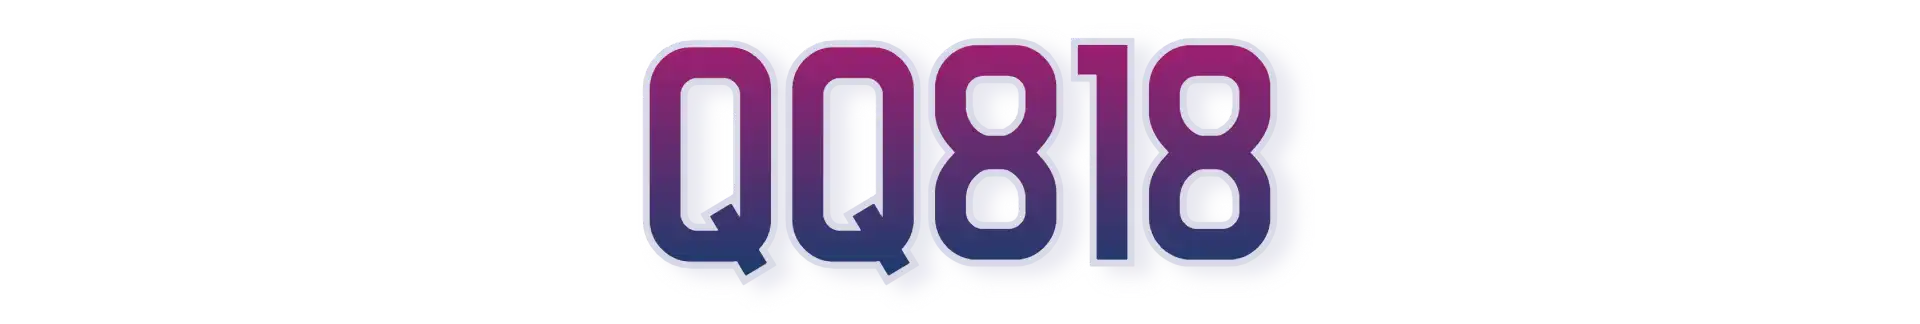 QQ818